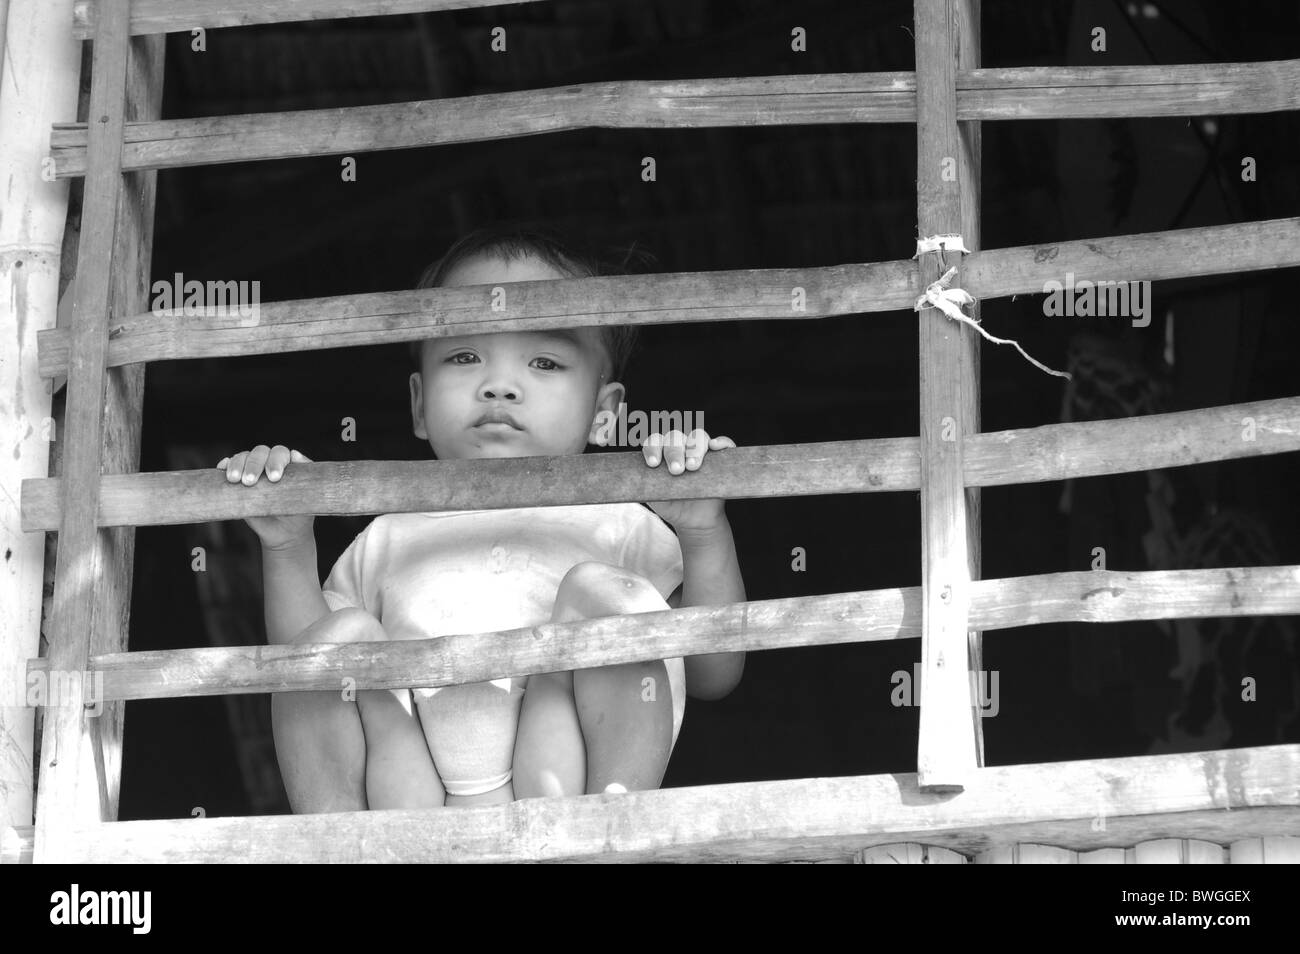 child poverty. Stock Photo